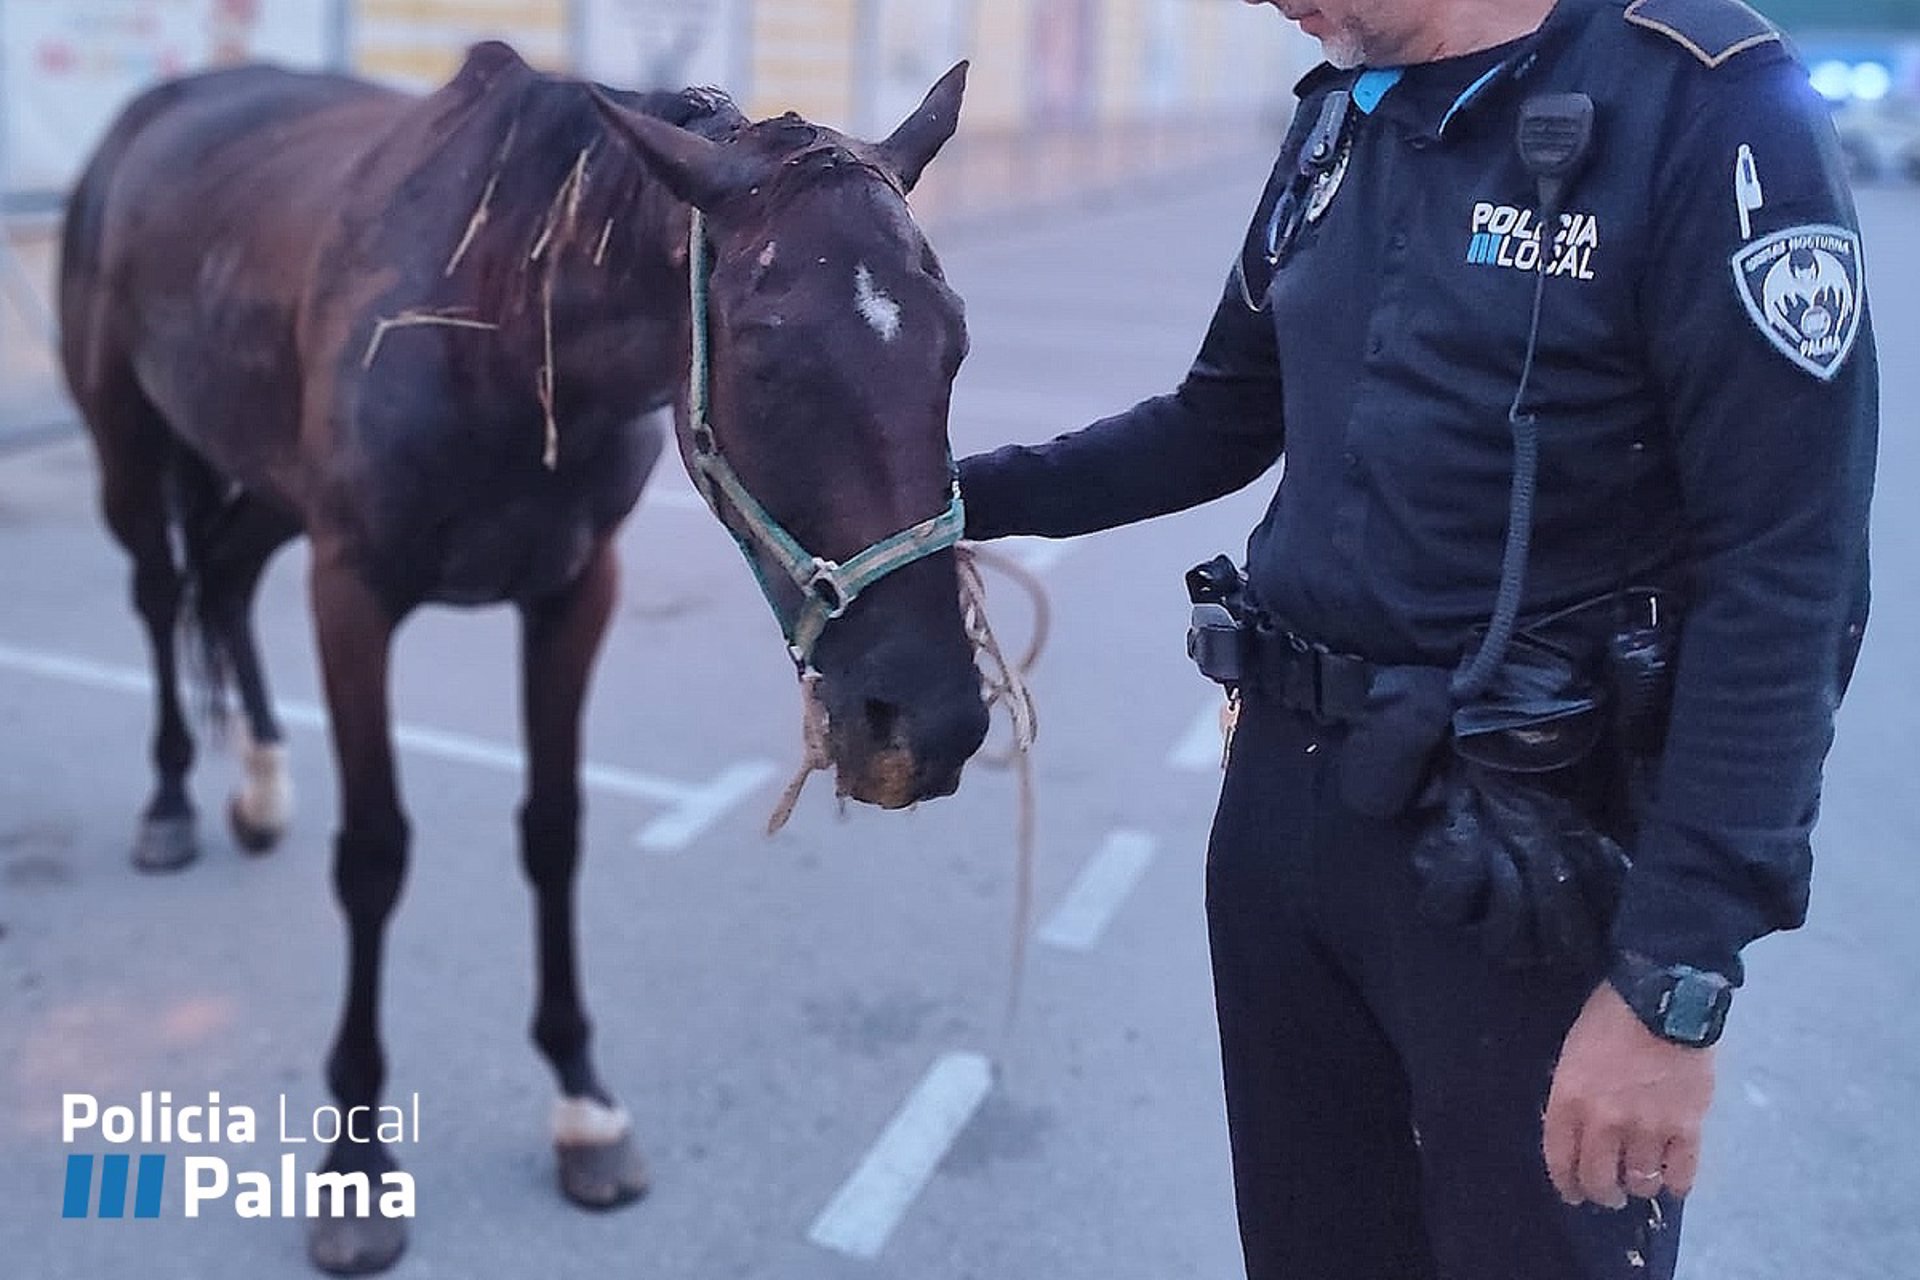 Un agente de la Policía Local sujeta al caballo enfermo que deambulaba suelto por el polígono de Son Malferit - POLICÍA LOCAL